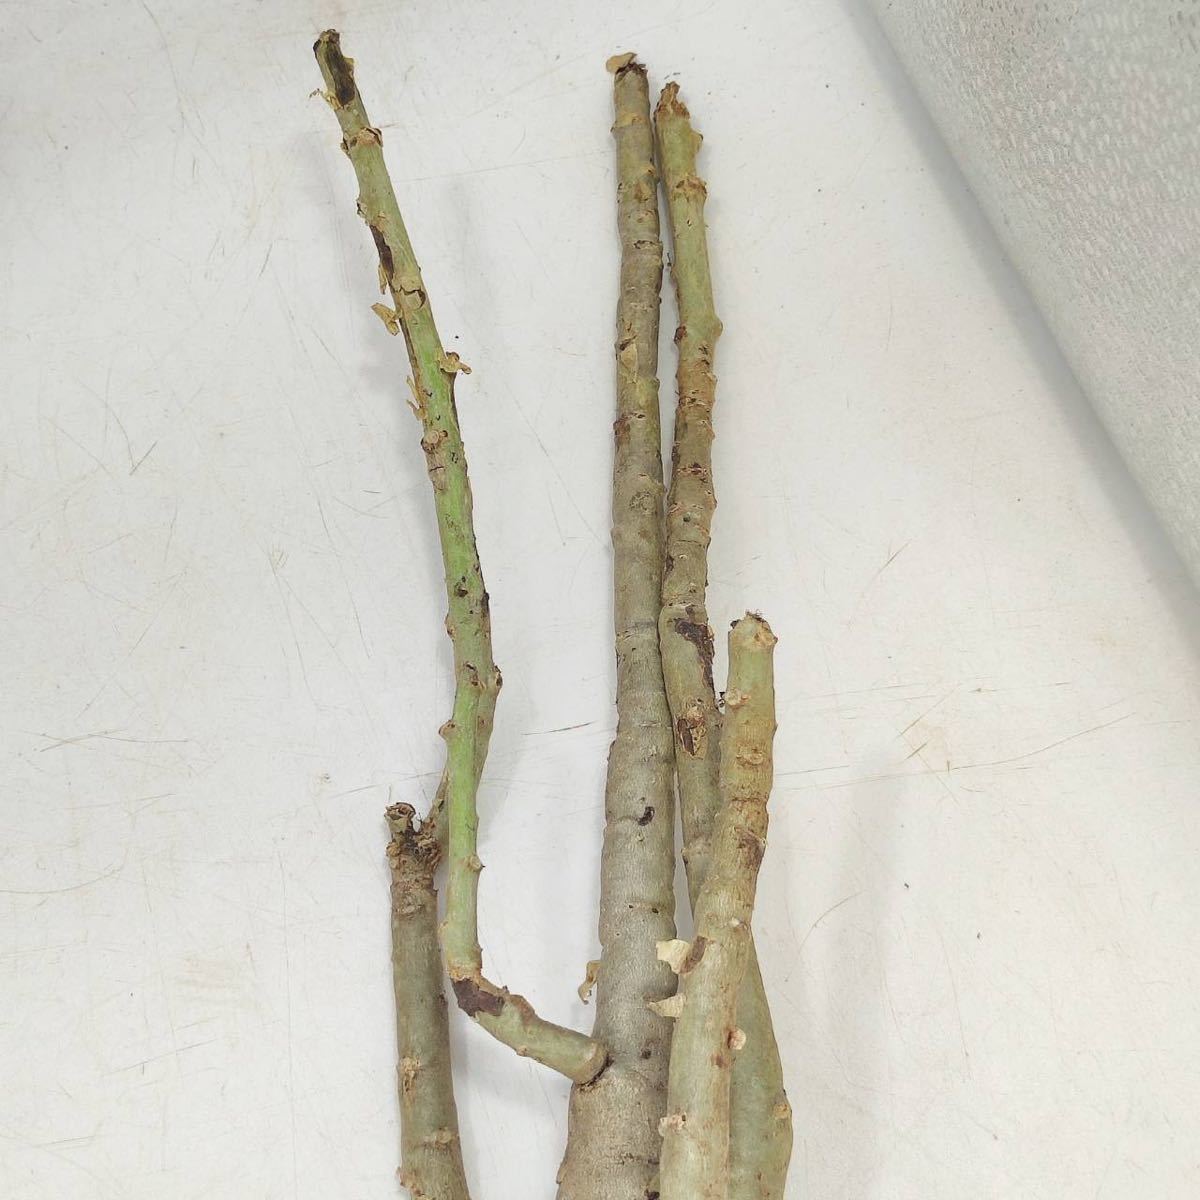 【2/8輸入】M041 ハコネコ ヤトロファ・スピカータ Jatropha spicata 塊根植物 観葉植物 未発根 _画像6